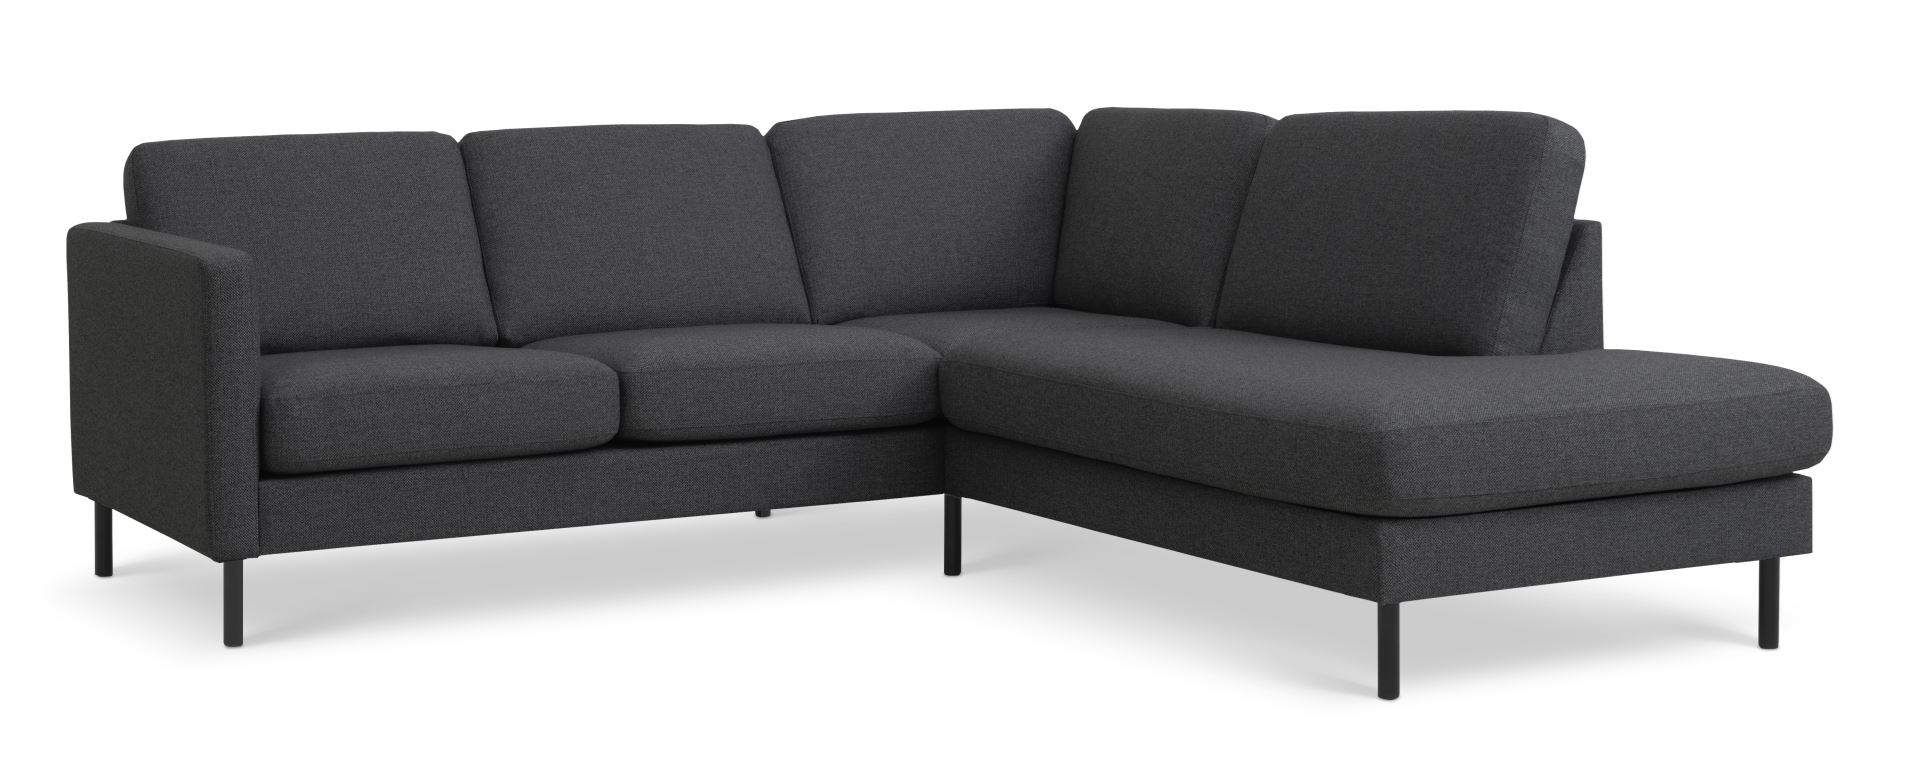 Ask sæt 53 lille OE sofa, m. højre chaiselong - antracitgrå polyester stof og sort metal